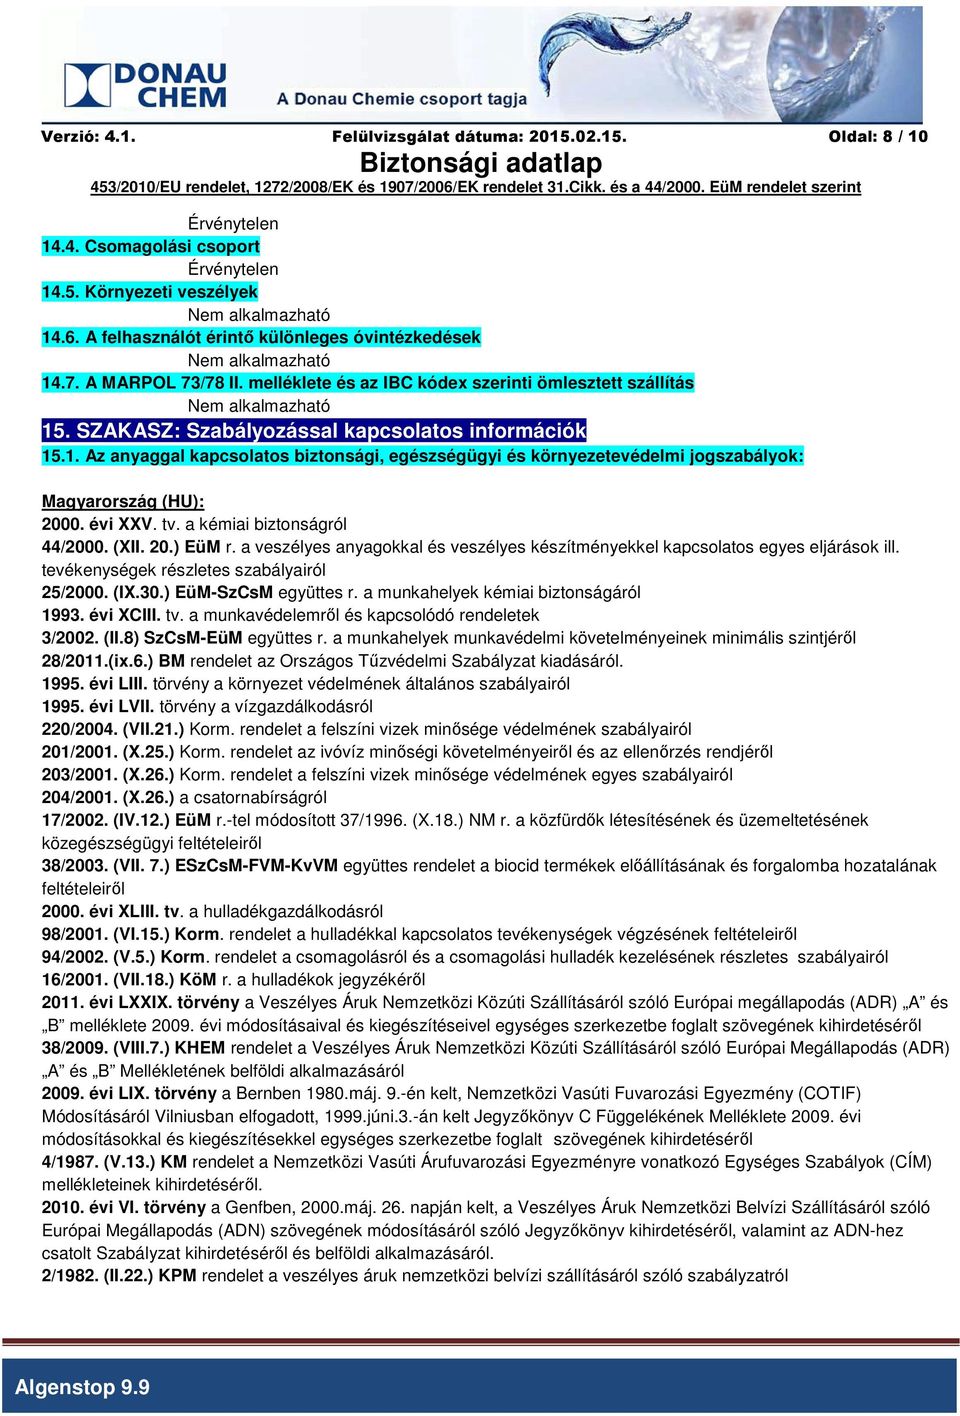 SZAKASZ: Szabályozással kapcsolatos információk 15.1. Az anyaggal kapcsolatos biztonsági, egészségügyi és környezetevédelmi jogszabályok: Magyarország (HU): 2000. évi XXV. tv.